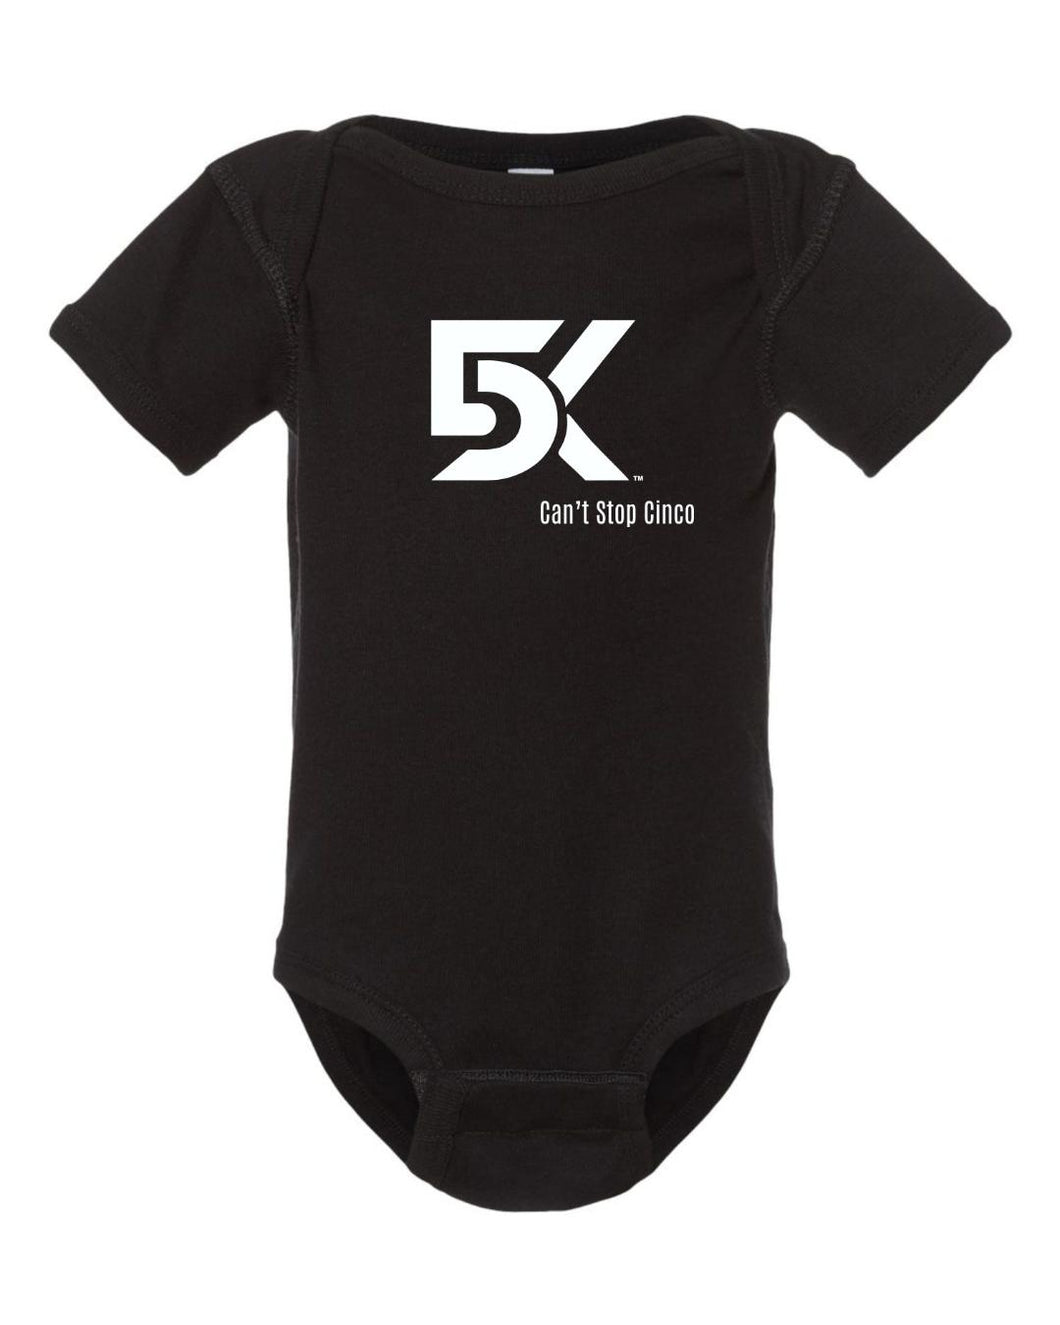 DK5 Infant Logo Onesie